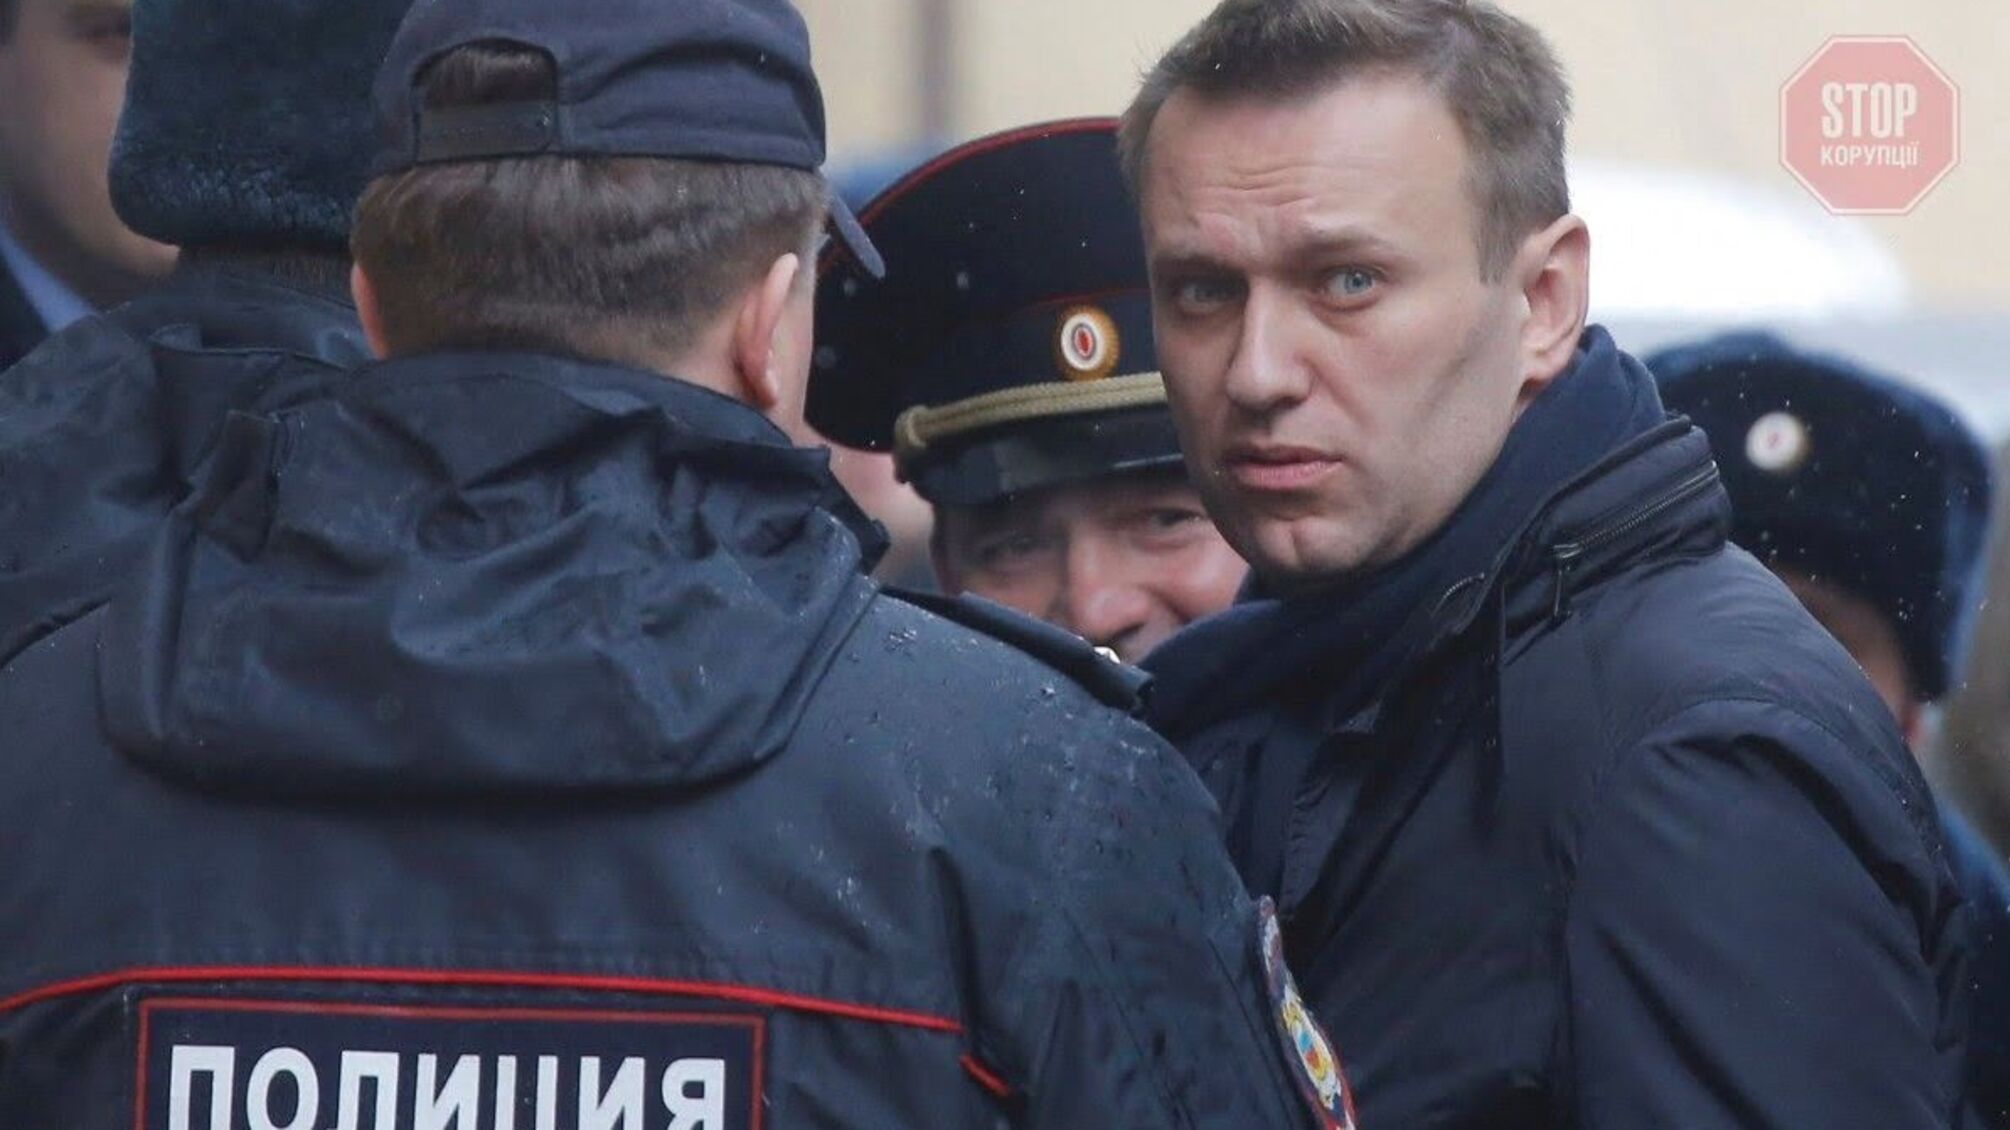 Российскому оппозиционеру Навальному предъявили еще одно обвинение